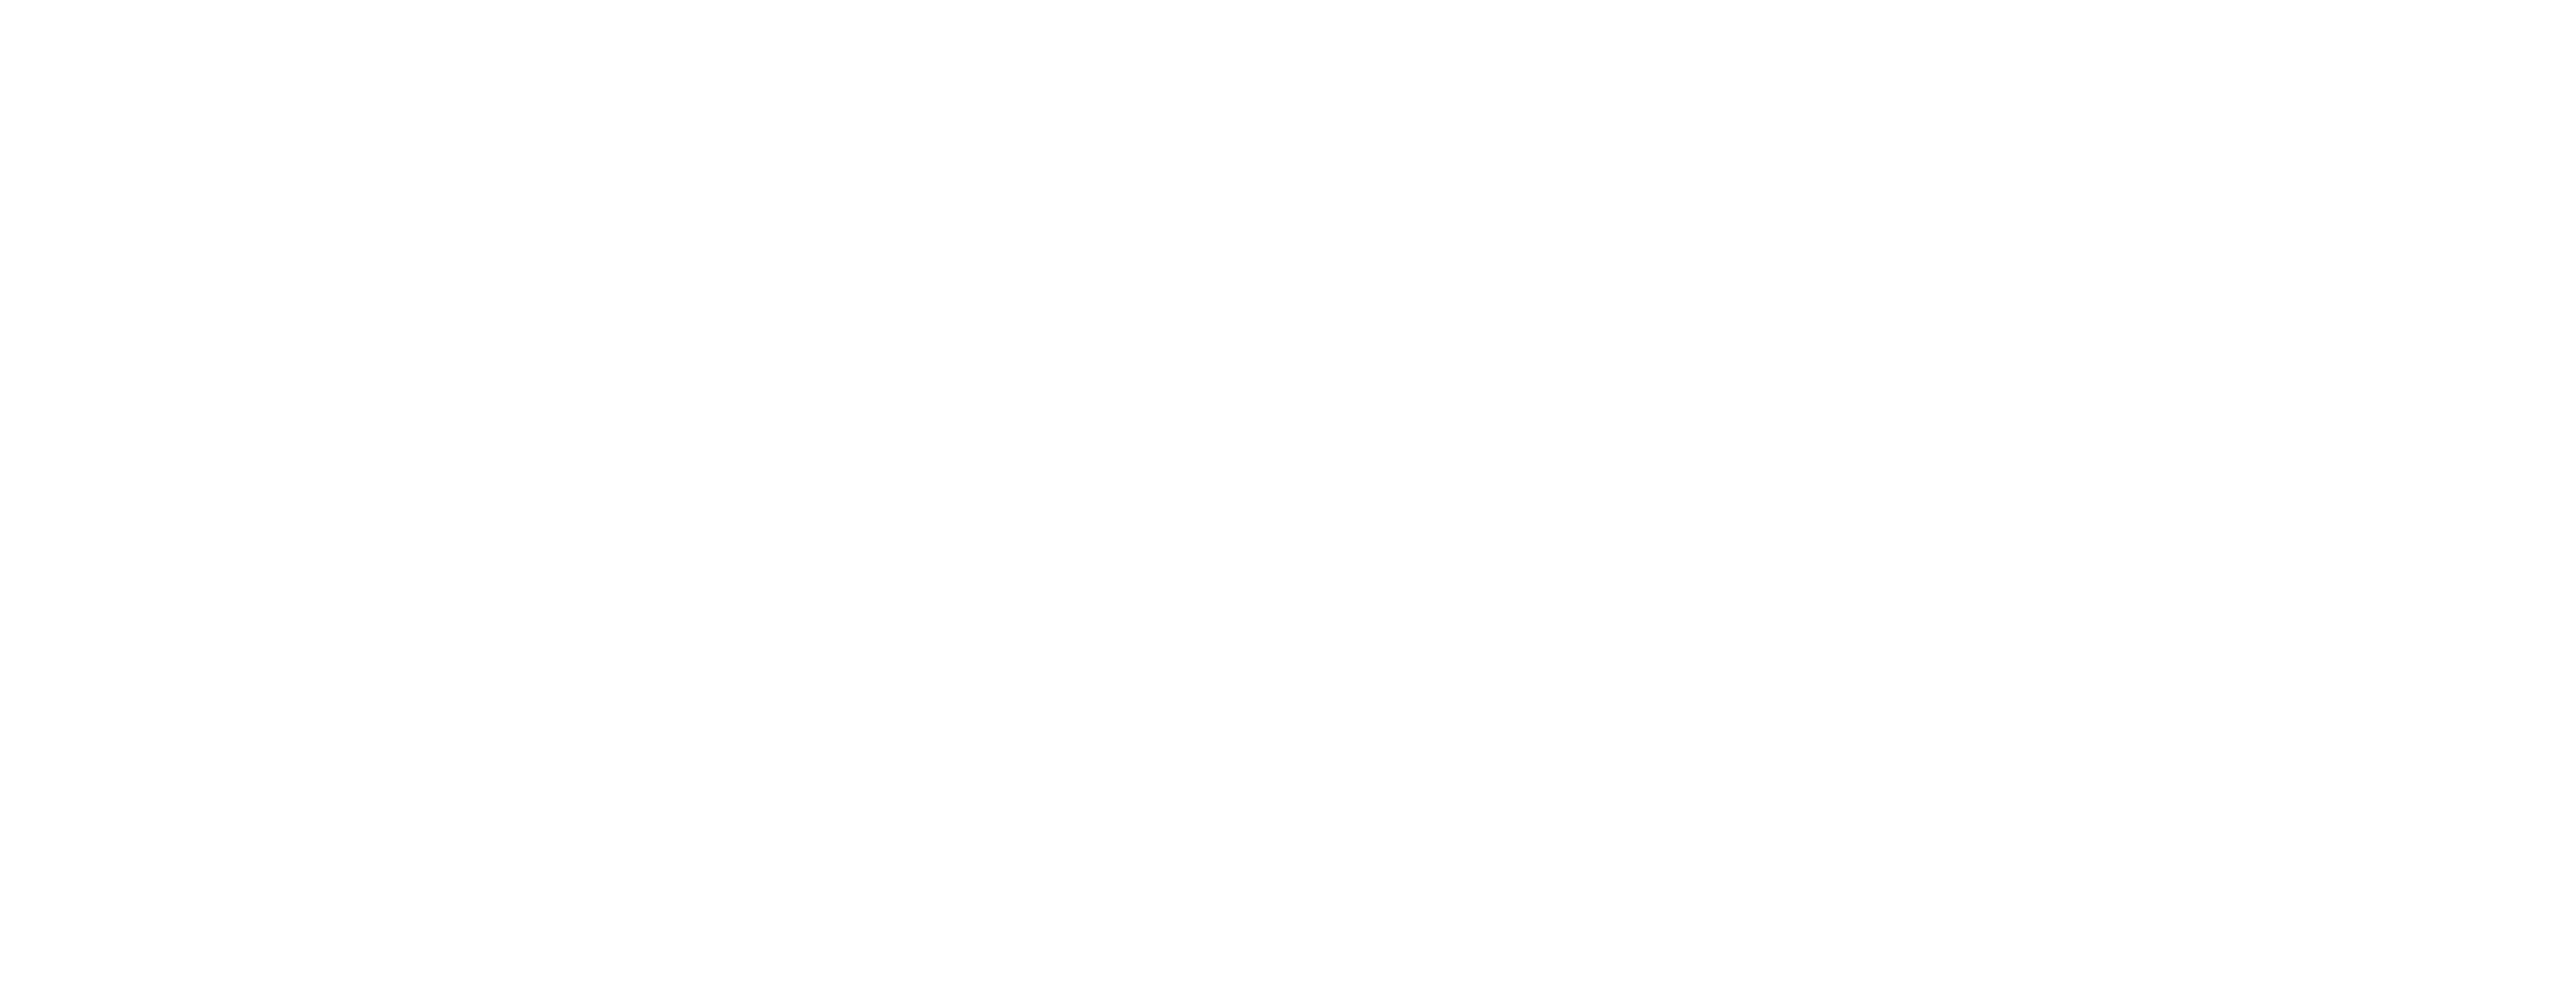 AI-CPPS logo